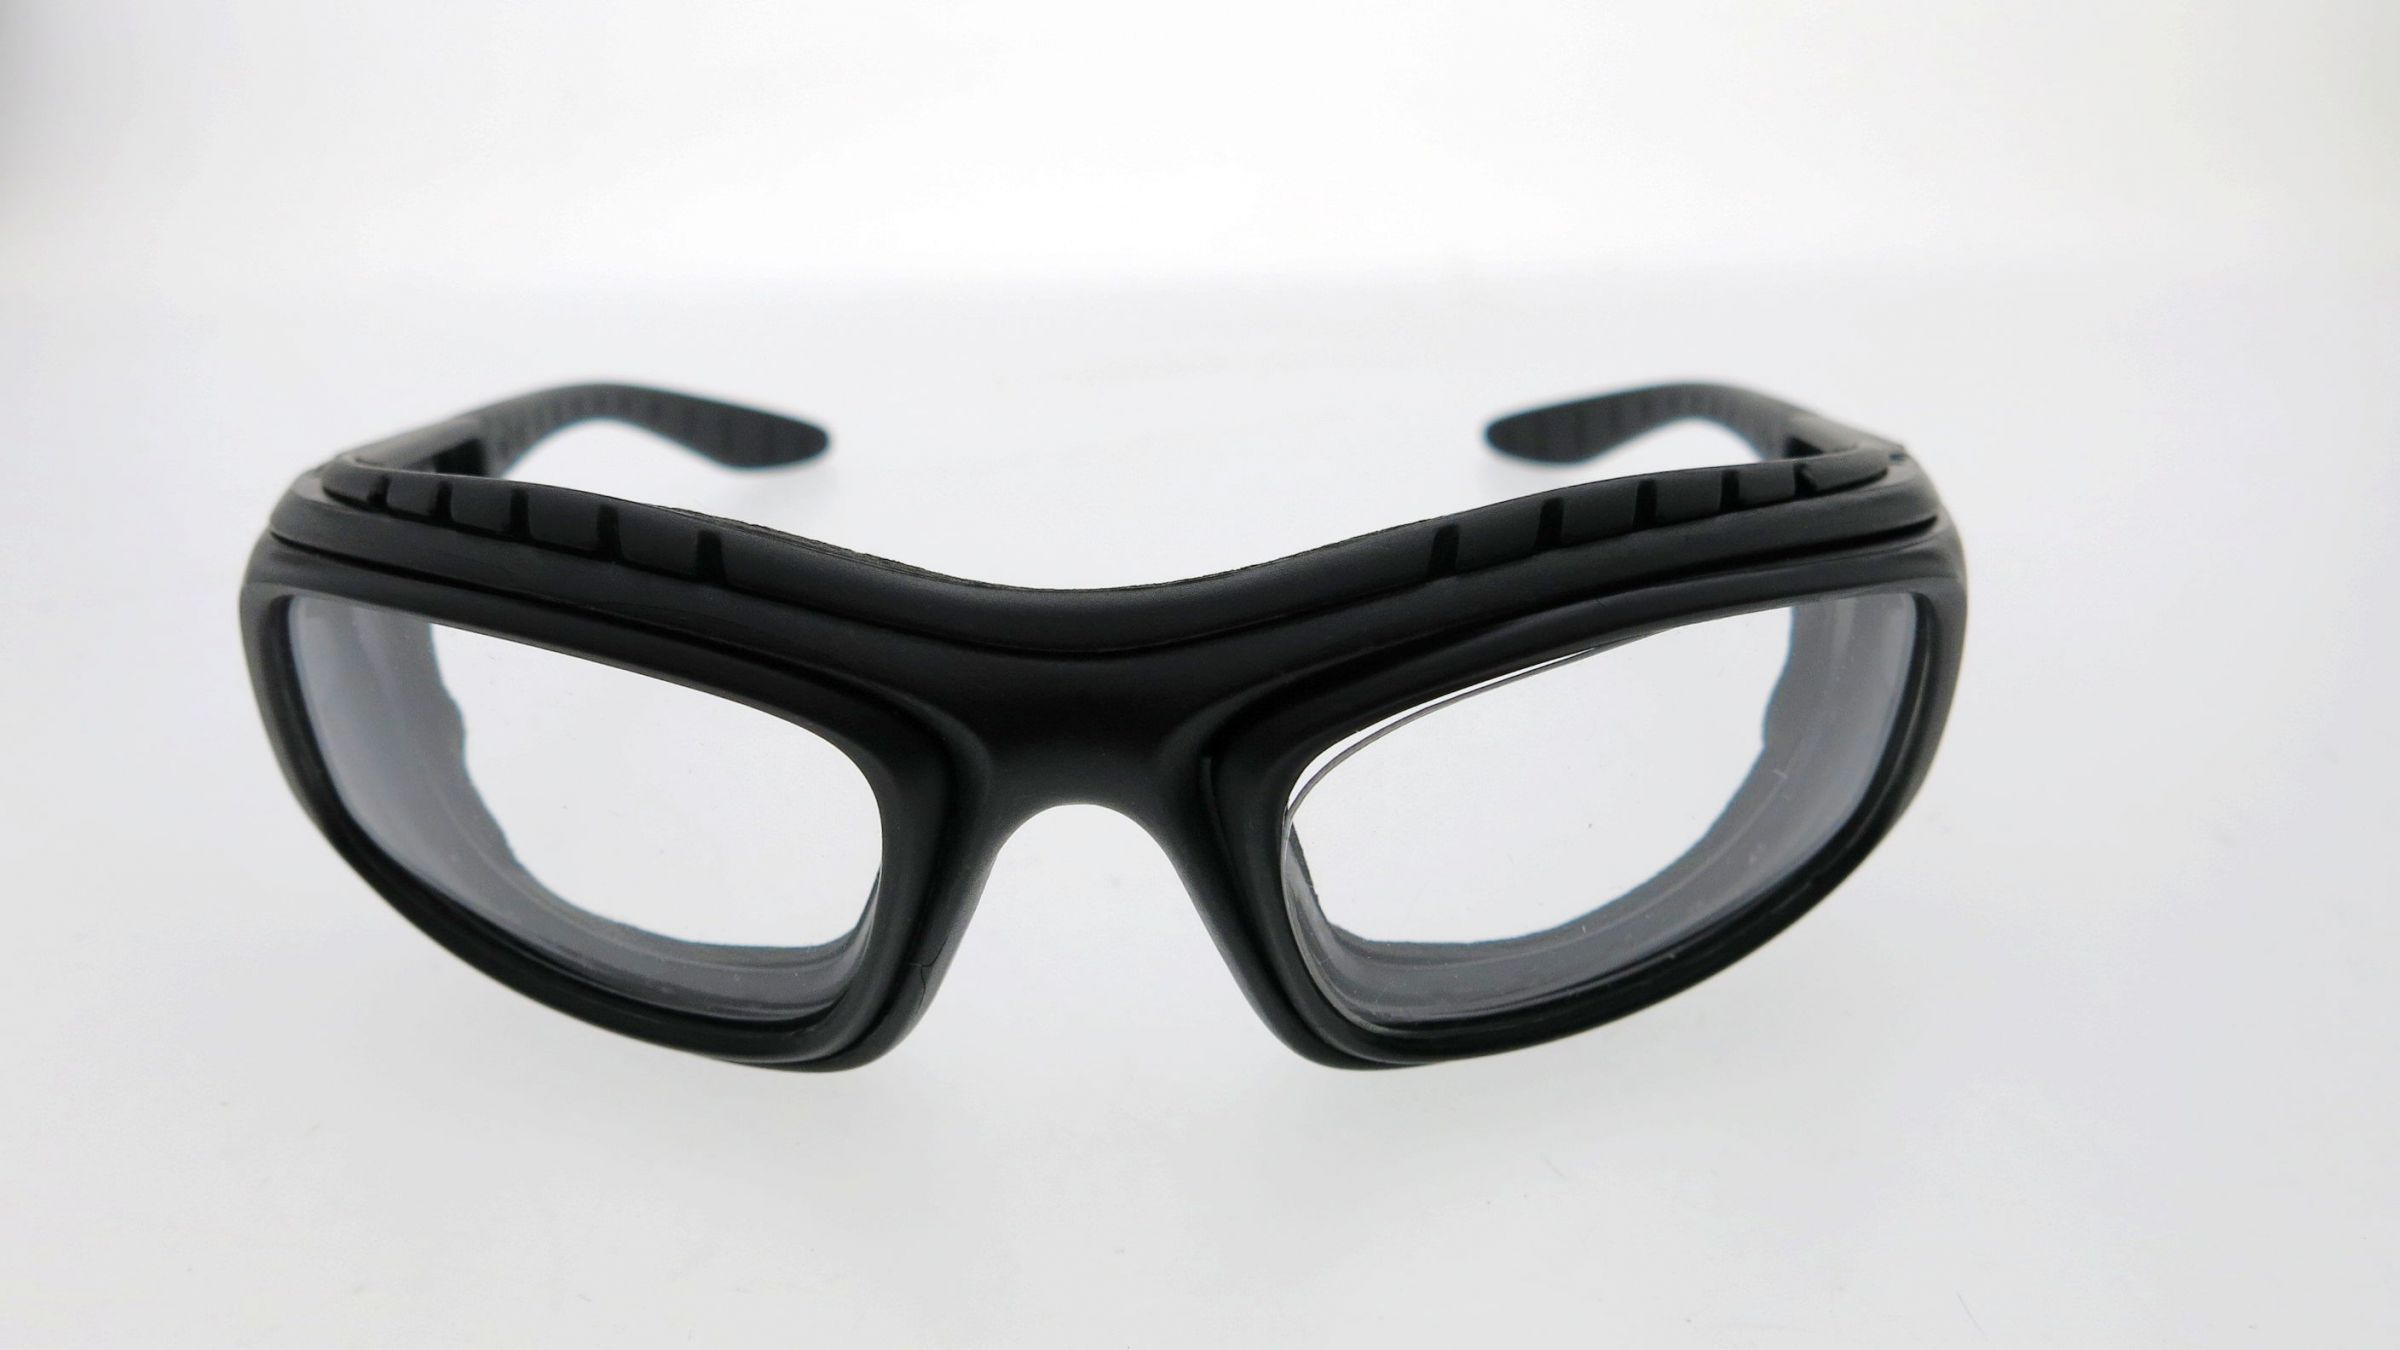 النظارات الواقية لتجربة رياضية آمنة وممتعة - أهمية النظارات الواقية لراكبي الدراجات